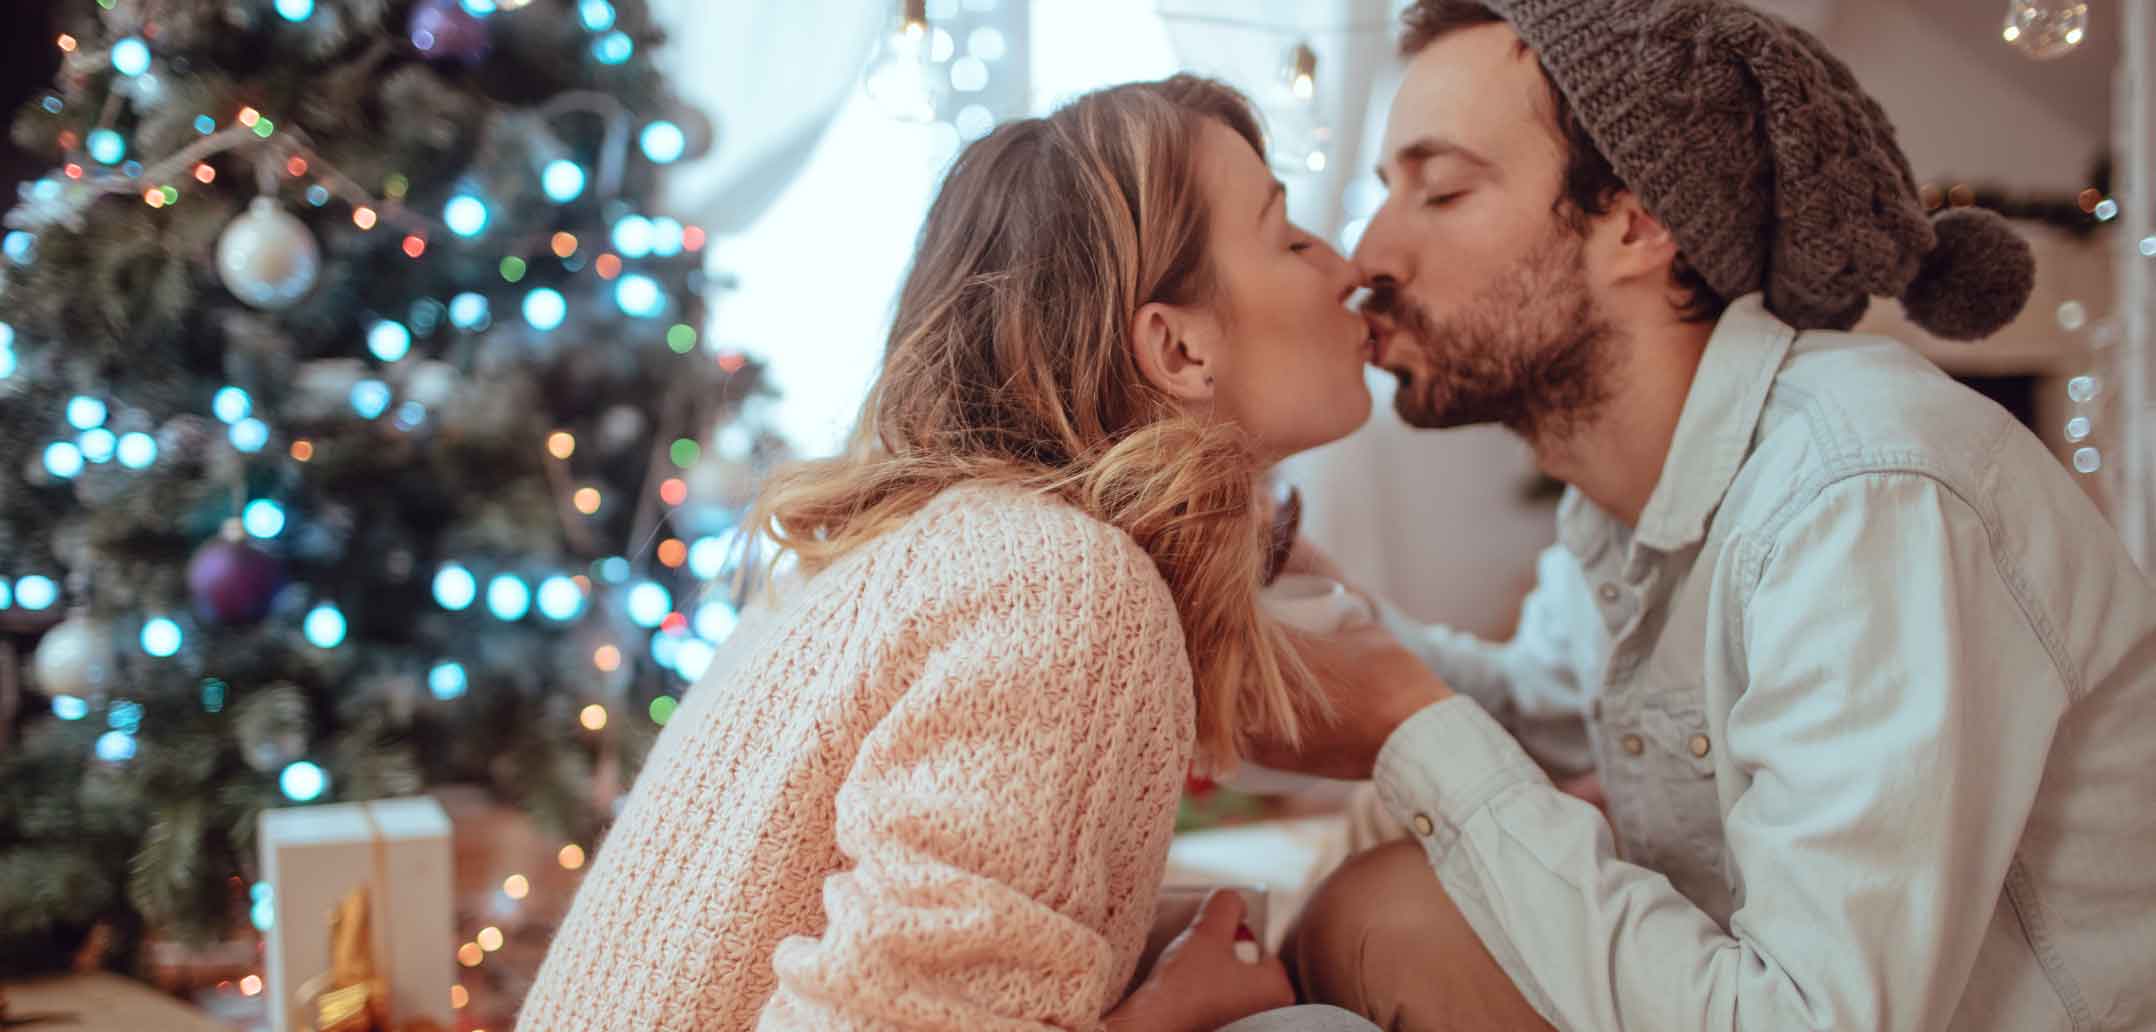 Zeit zu verschenken kommt bei Paaren zu Weihnachten am besten an